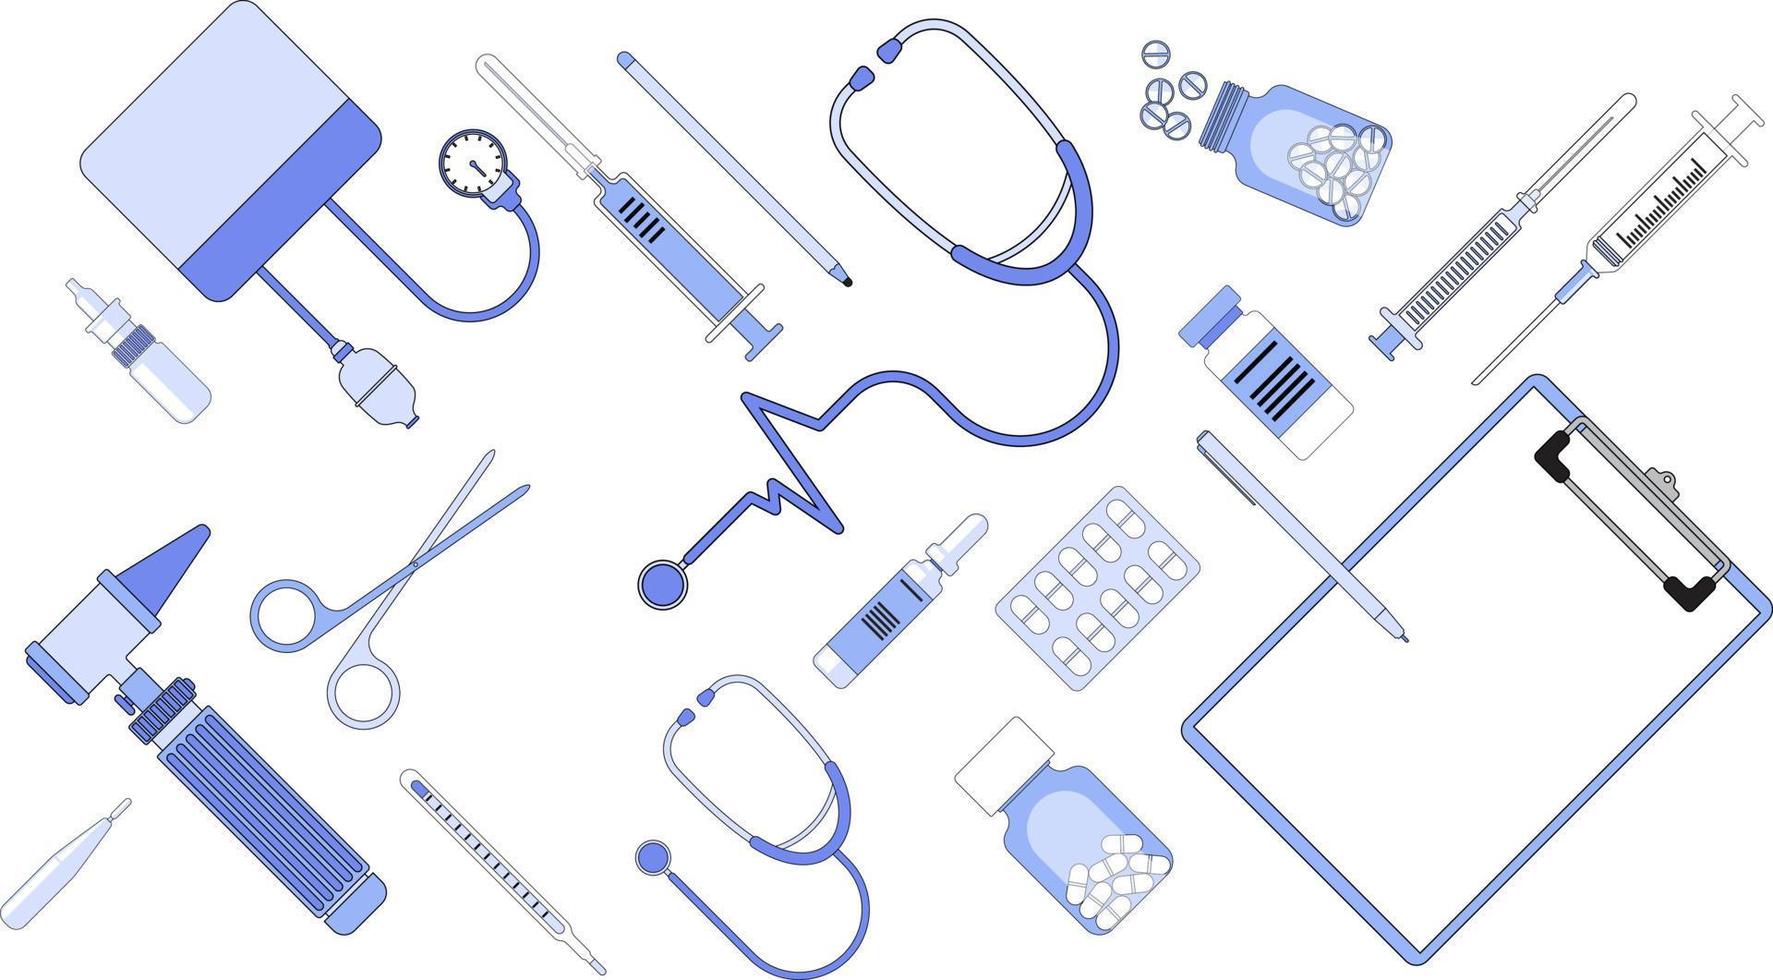 illustrazioni vettoriali di design piatto per apparecchiature mediche